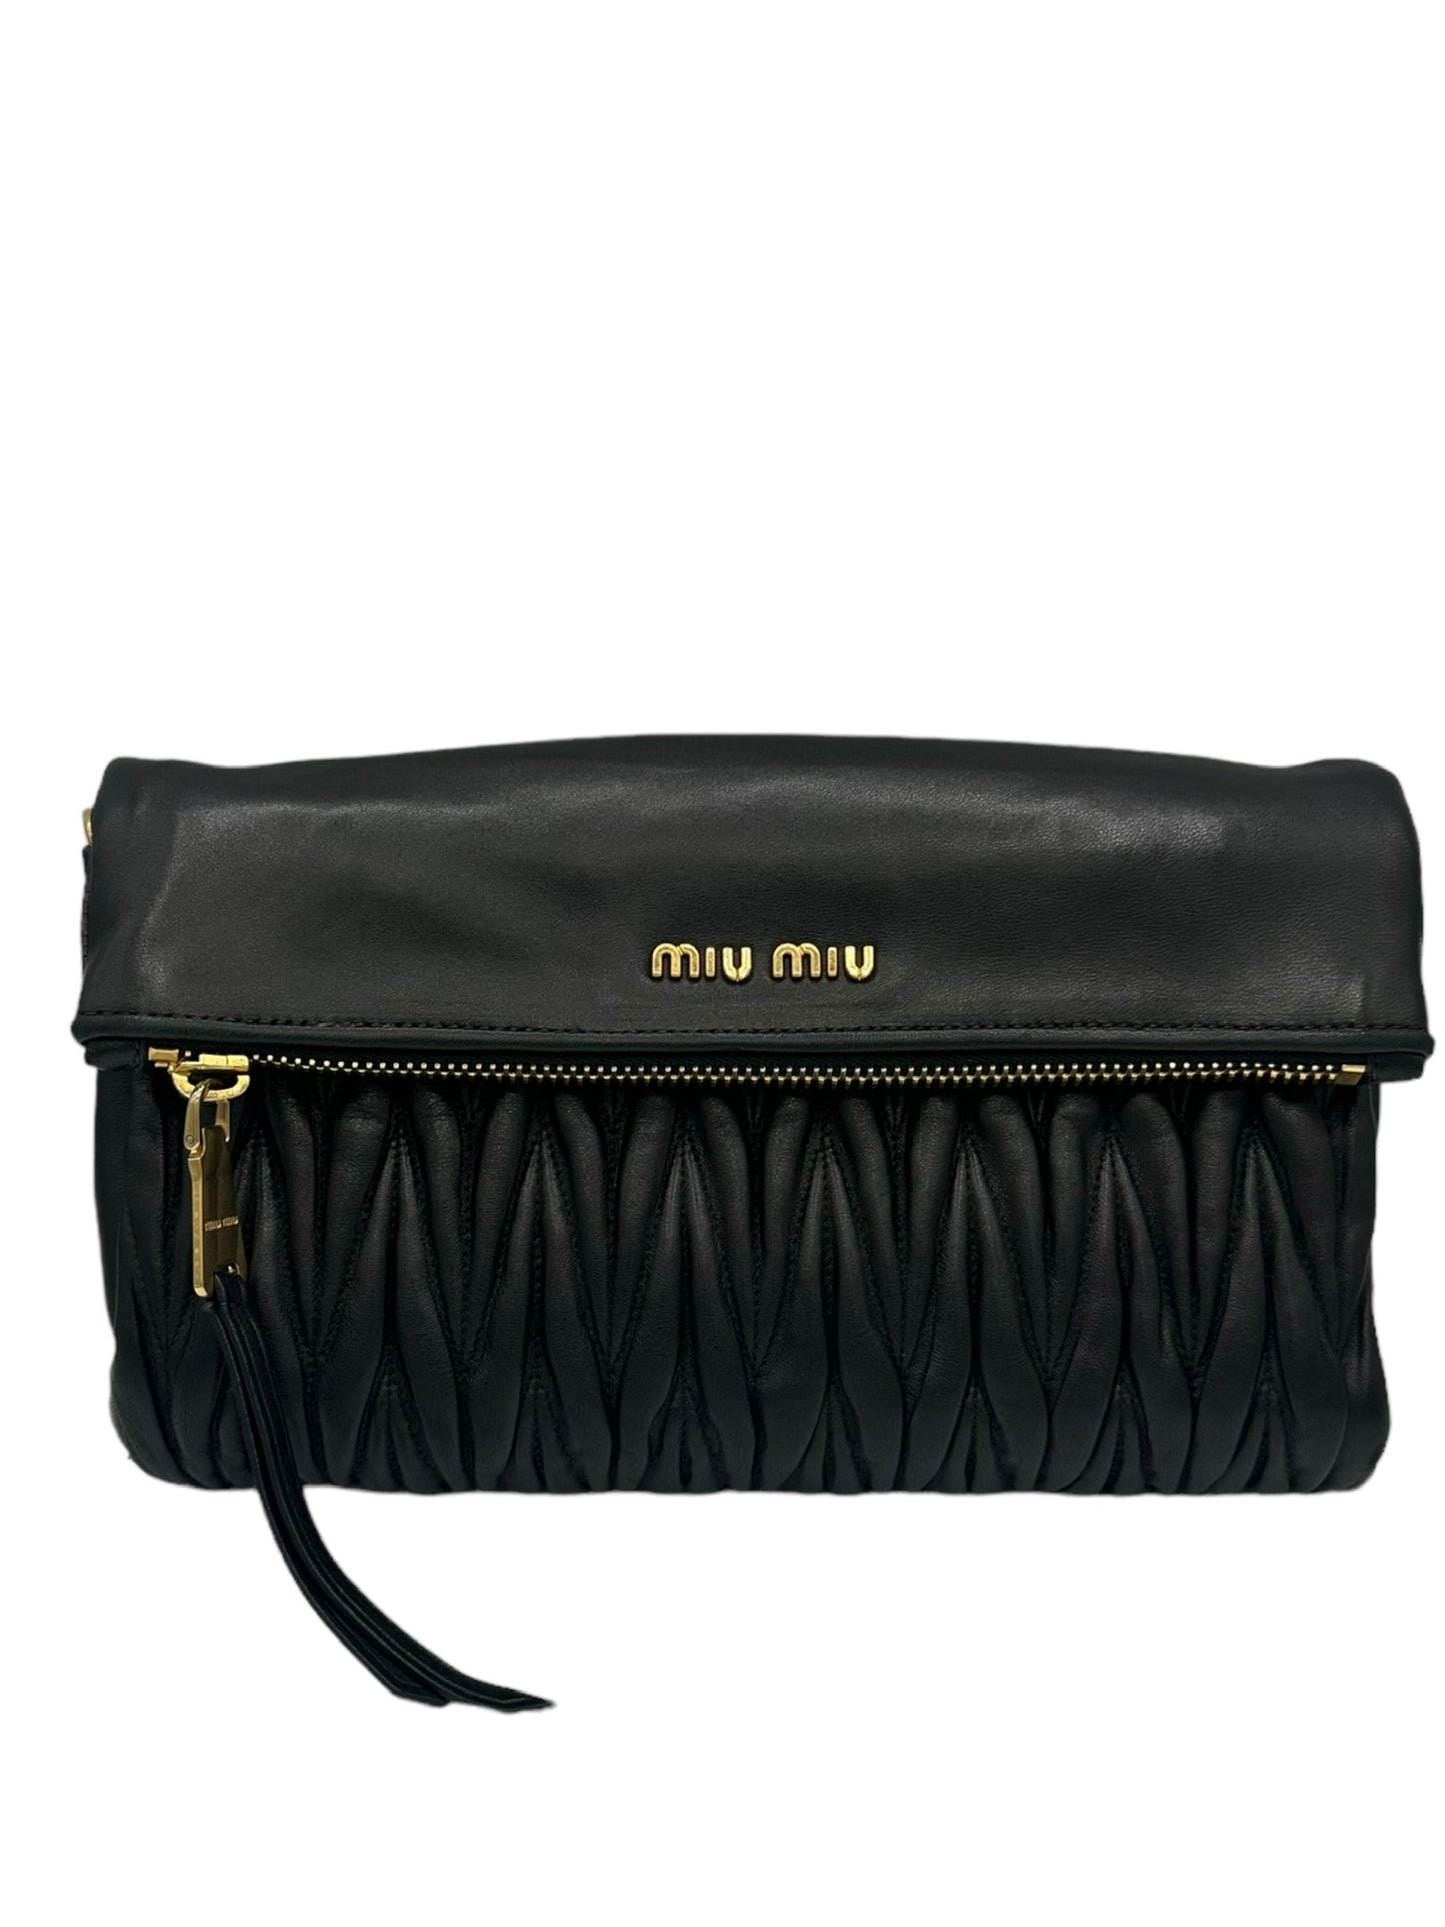 MIU MIU - Black Matelasse Leather Fold Over Clutch